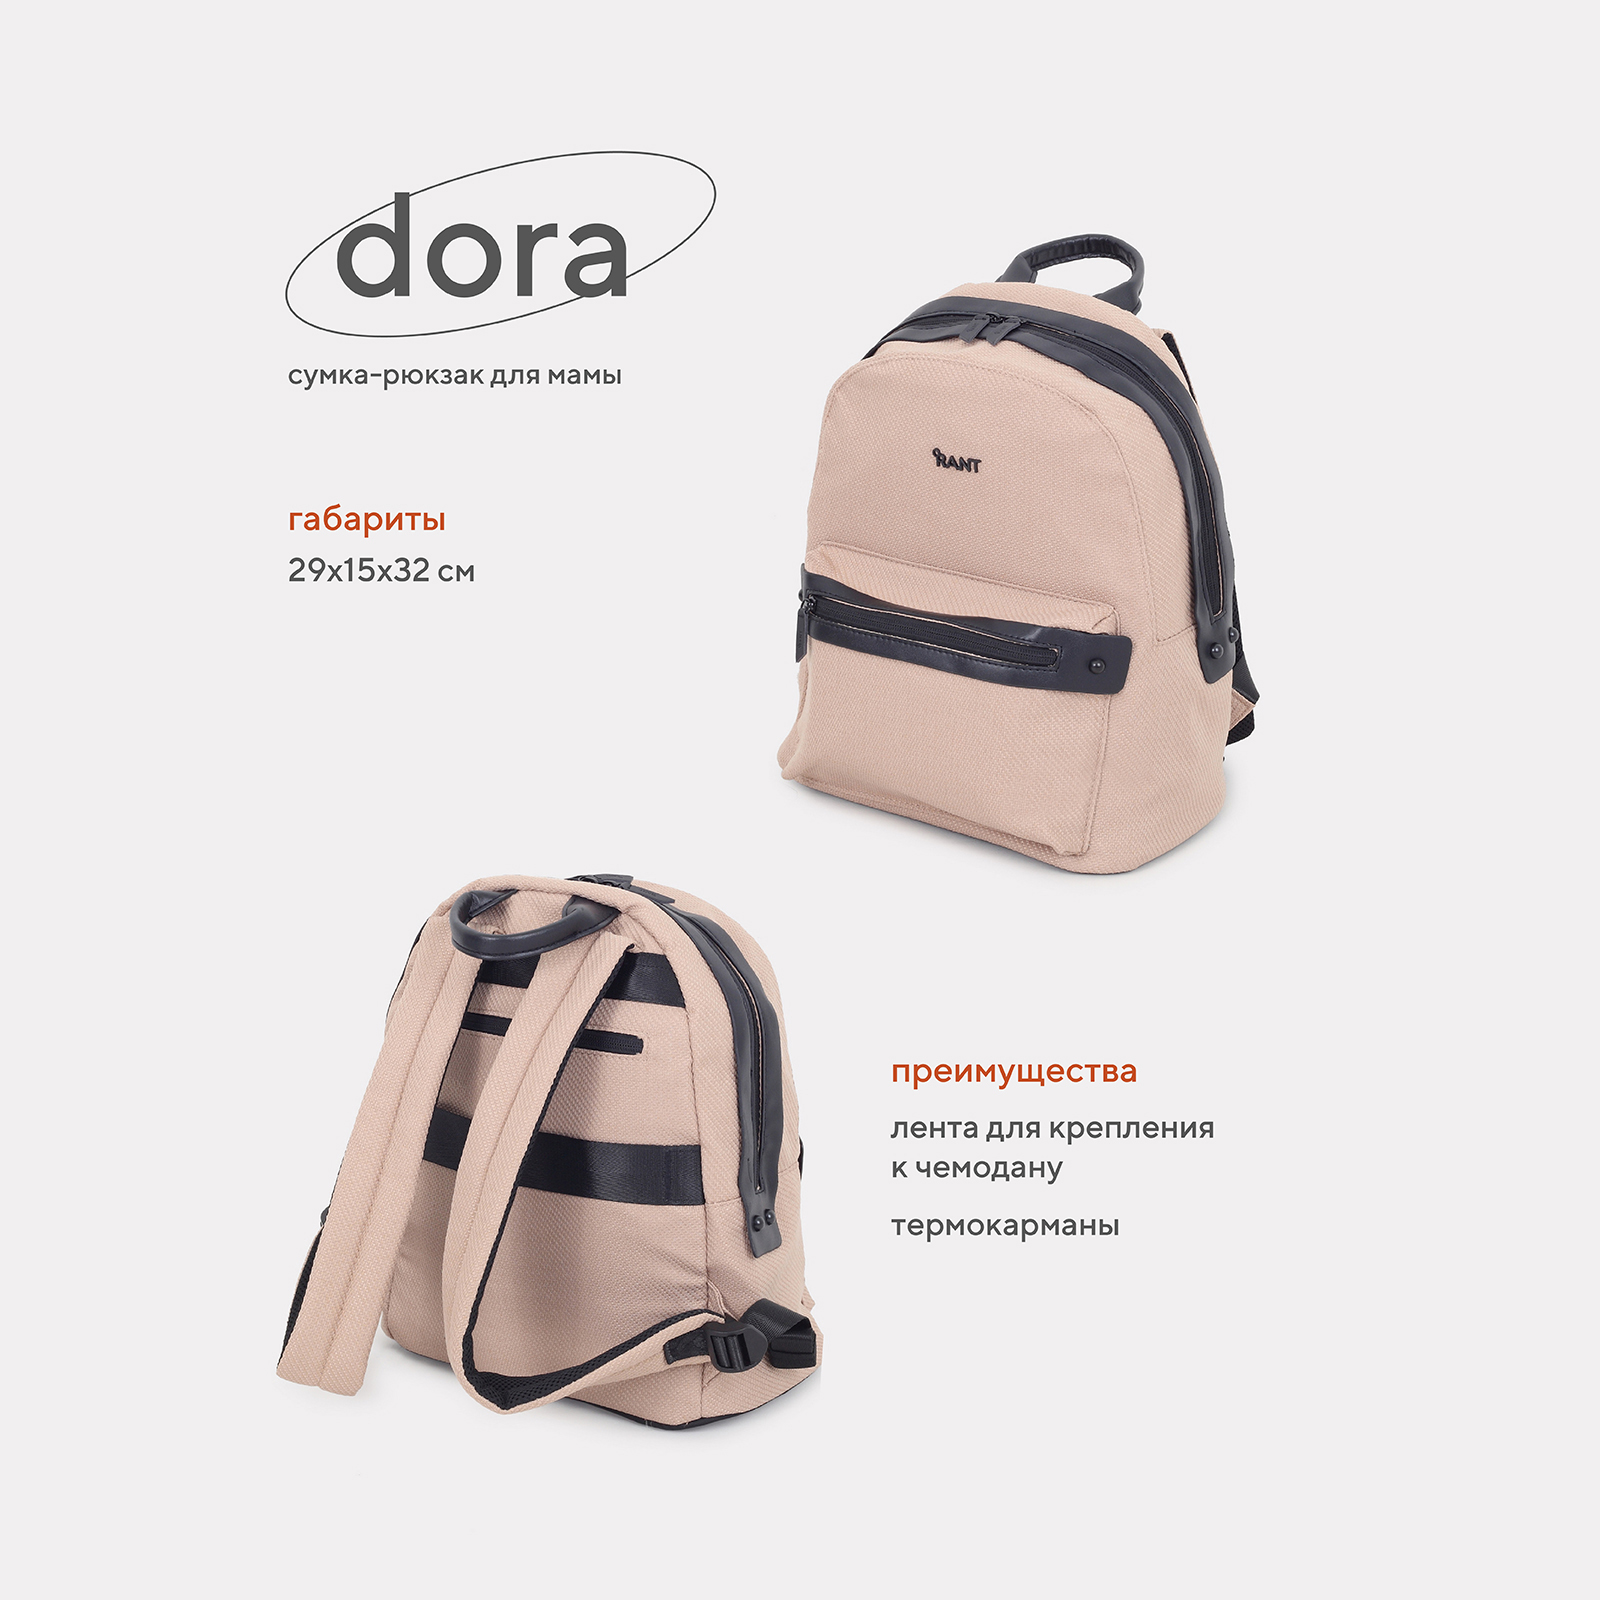 Сумка-рюкзак для мамы RANT Dora RB009 Beige rant сумка для мамы шоппер shopping set rb006